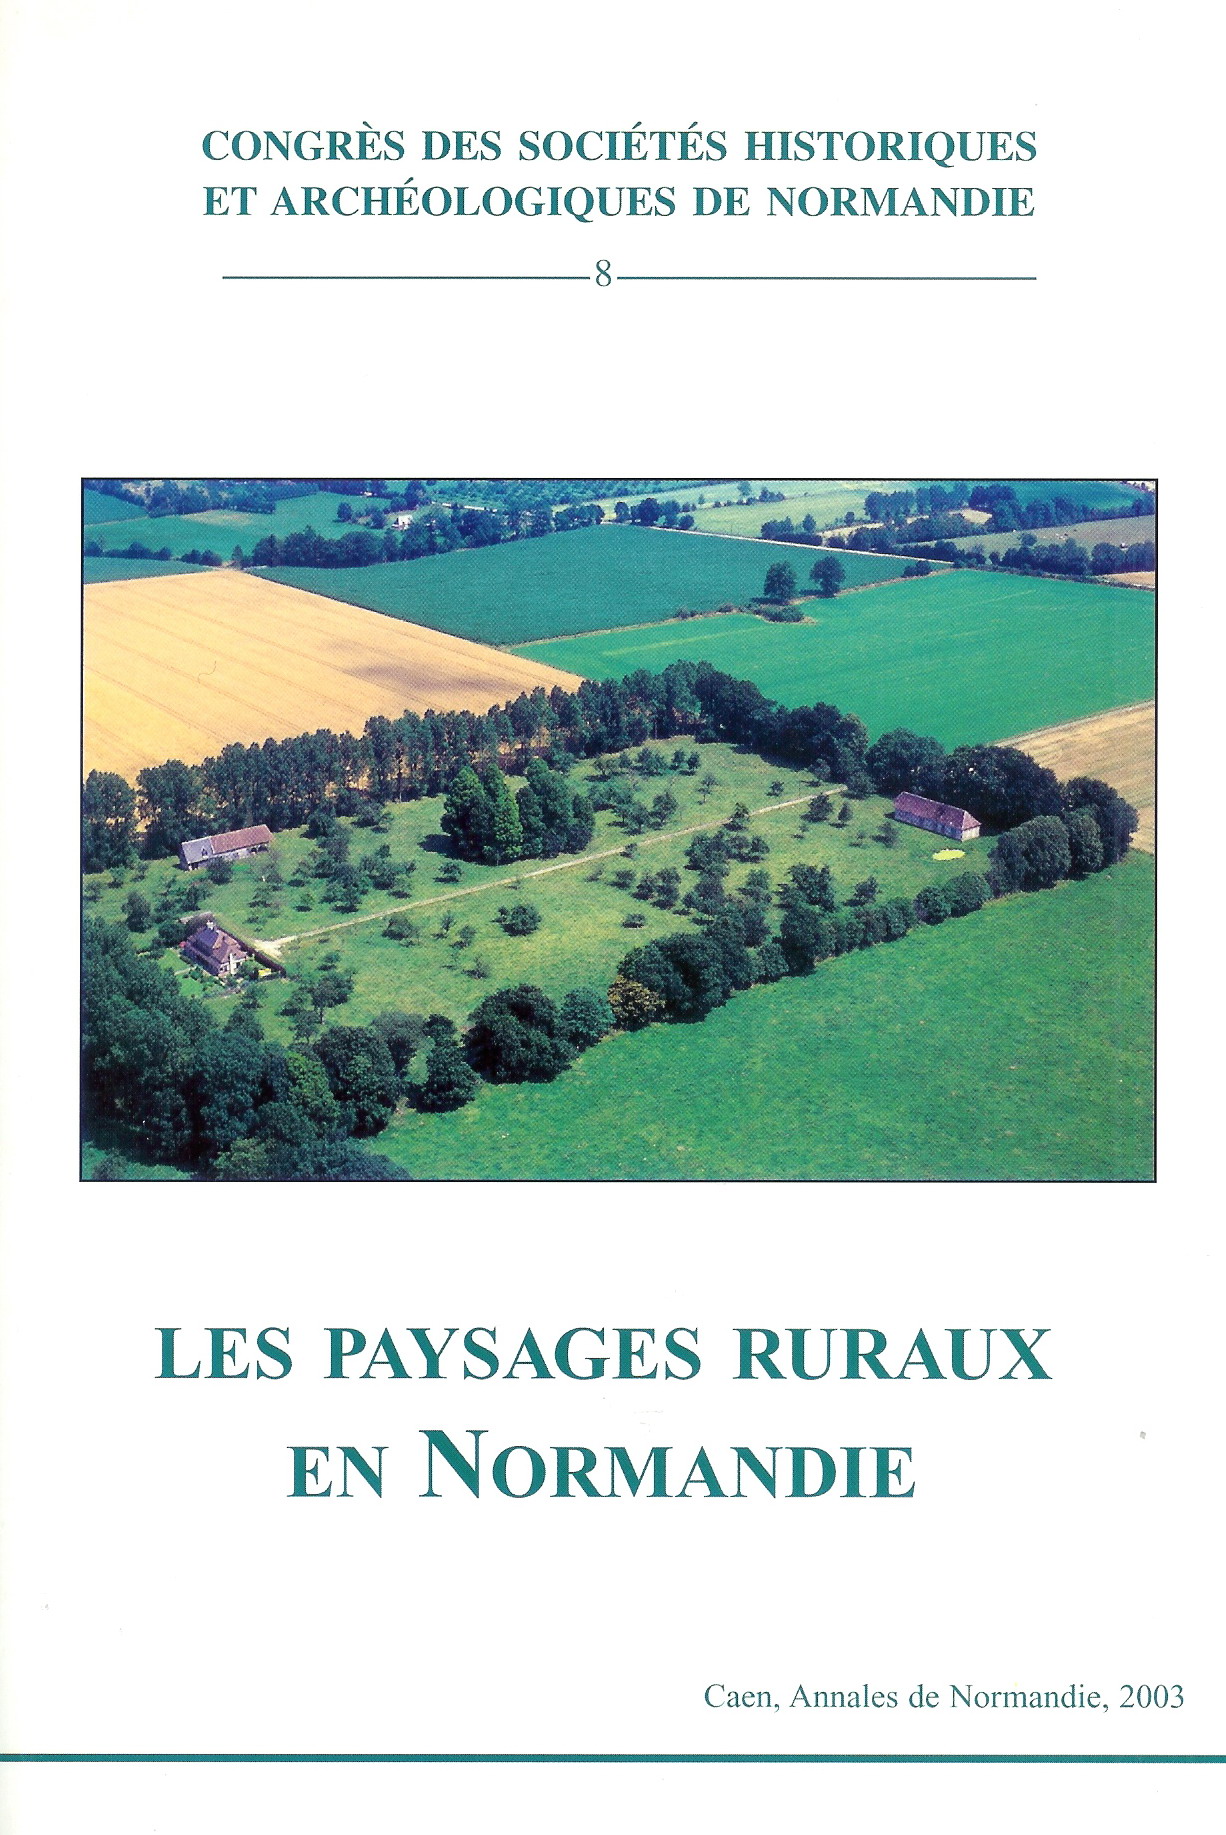 Les paysages ruraux en Normandie